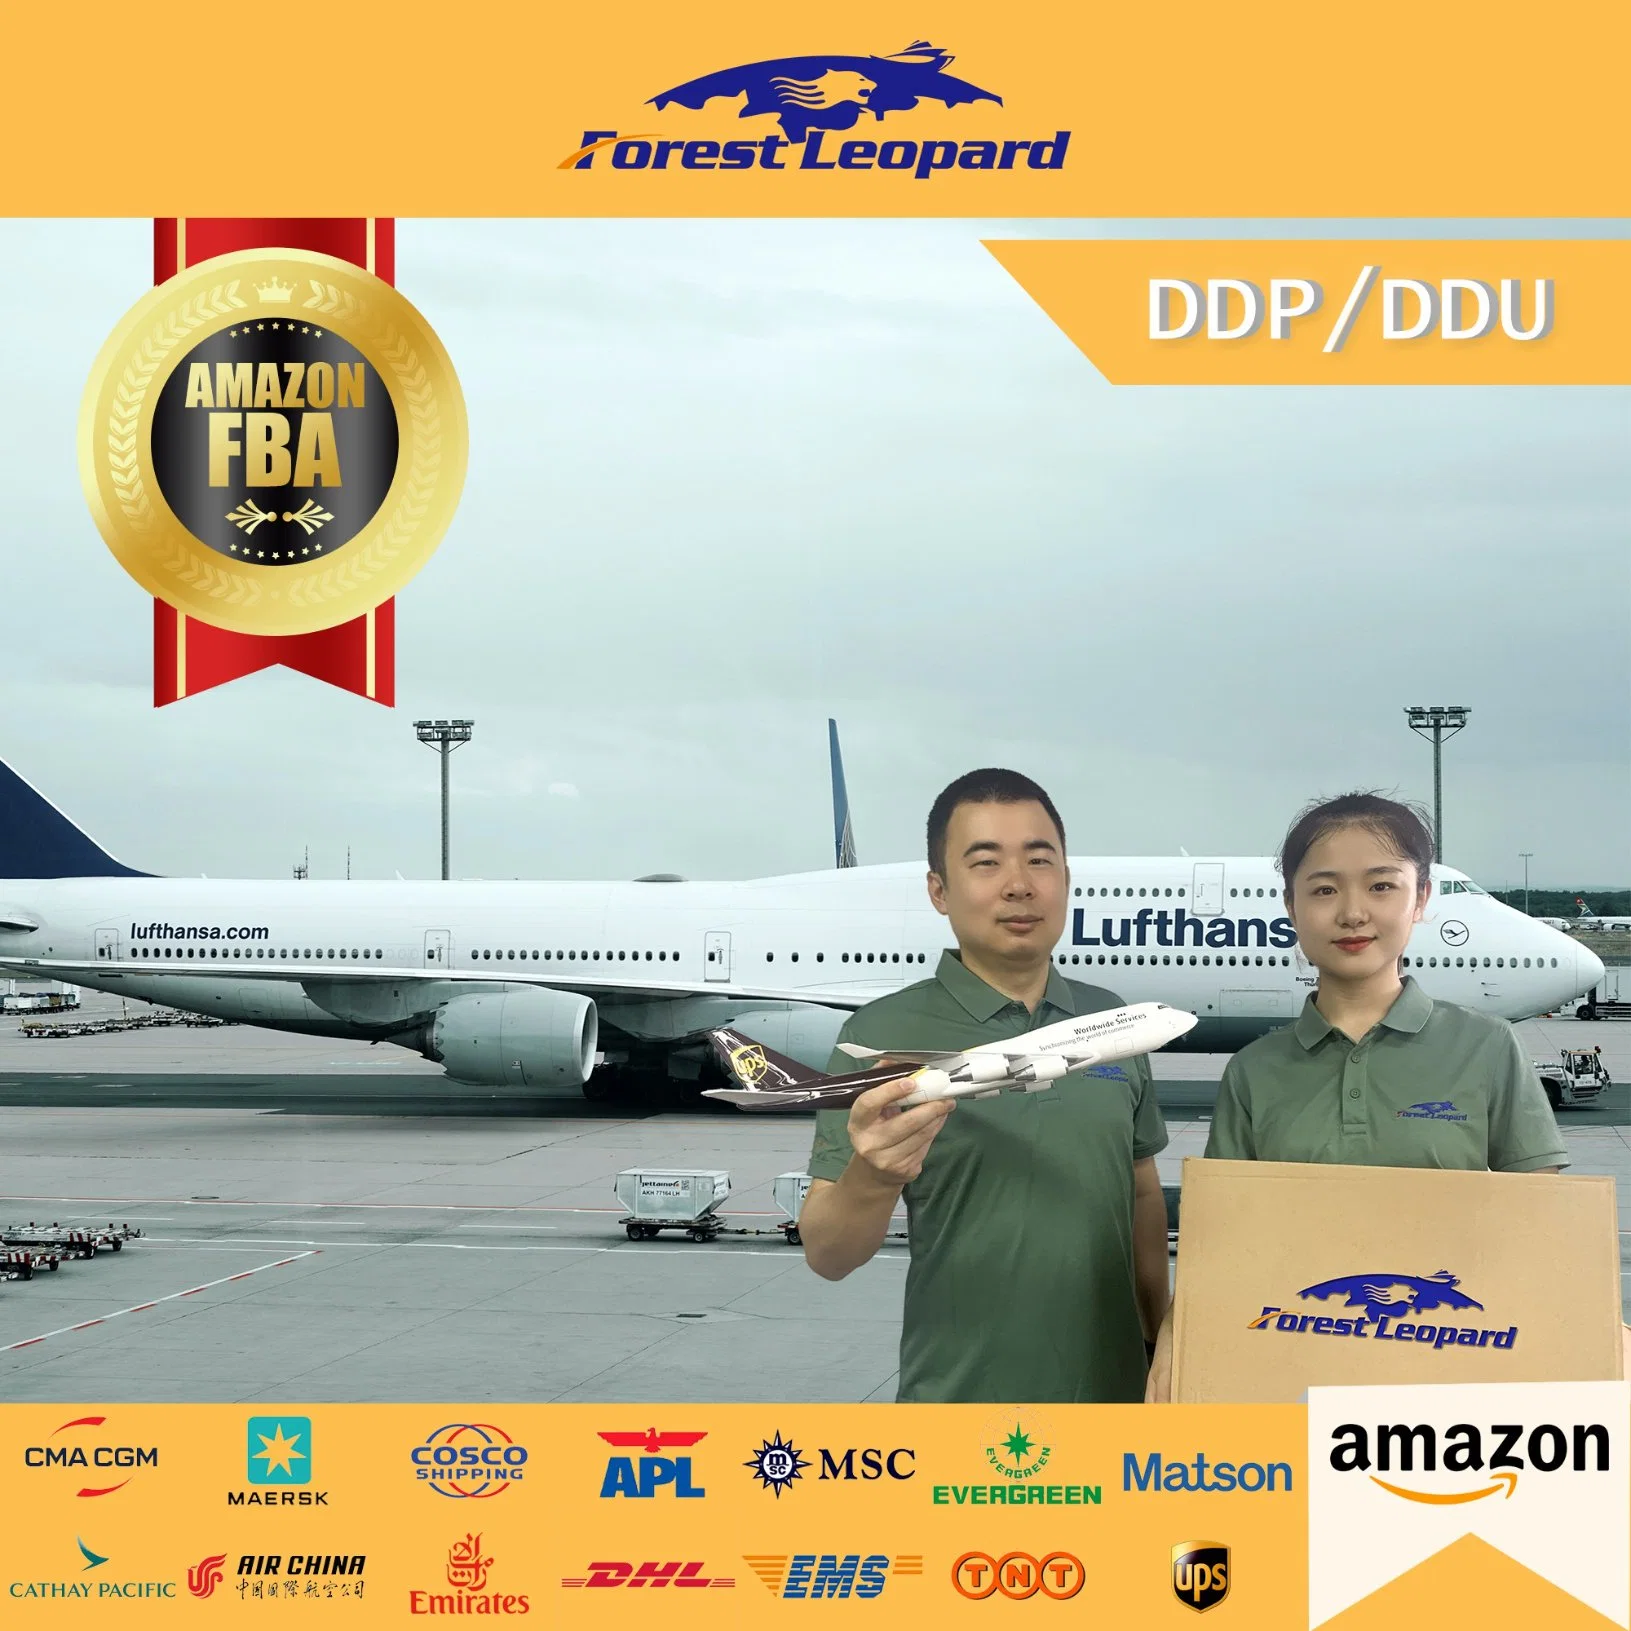 Дешевые авиаперевозки грузов в Дубай Филиппины США Булгари Чартеринг От двери до двери DDP DHL Track Logistics